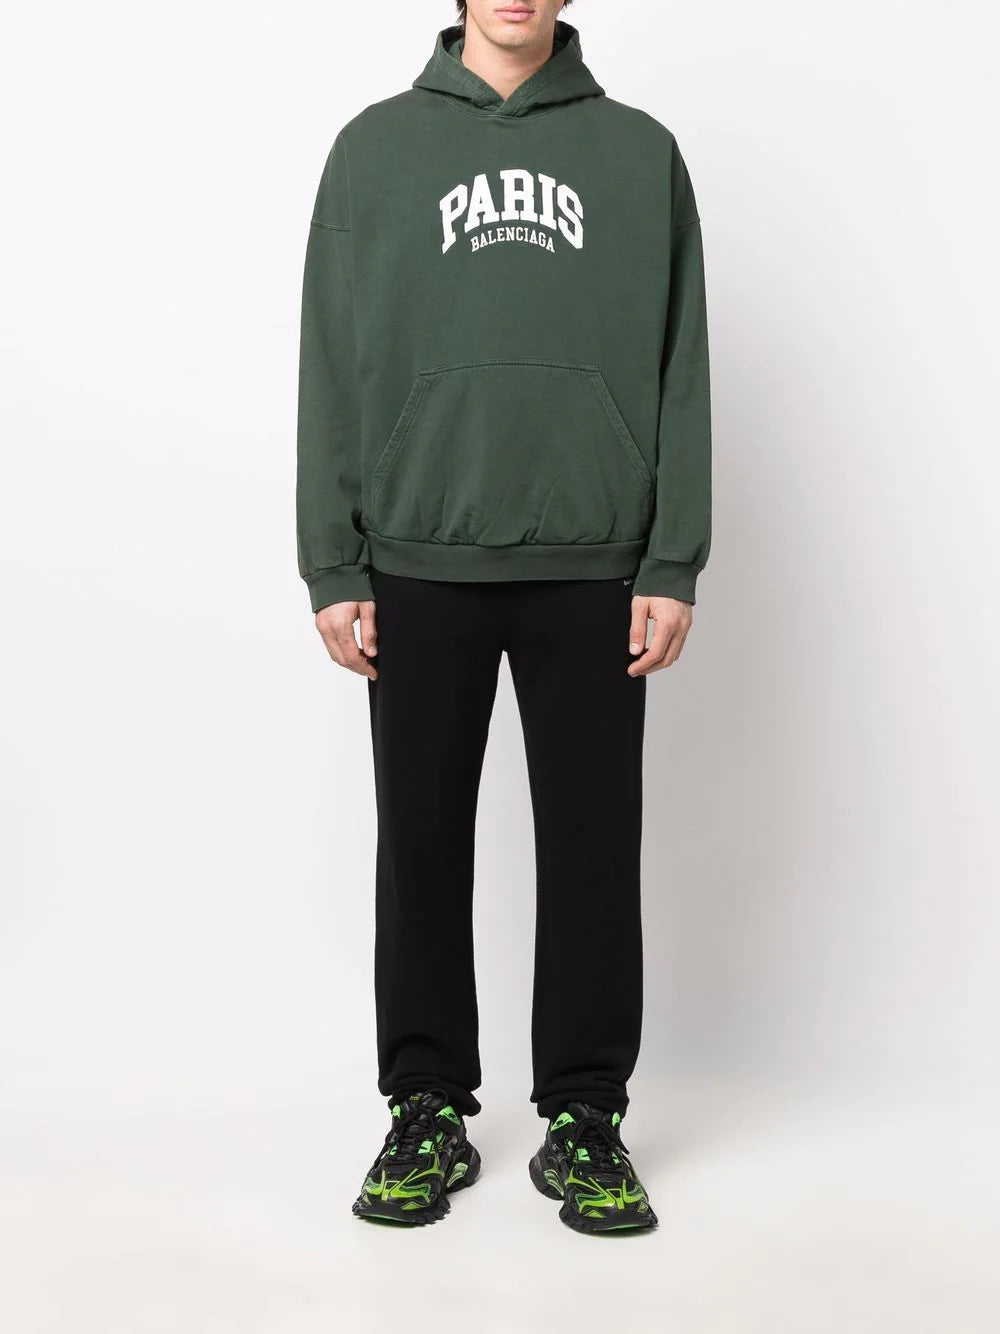 Balenciaga Paris logo-print pullover hoodie